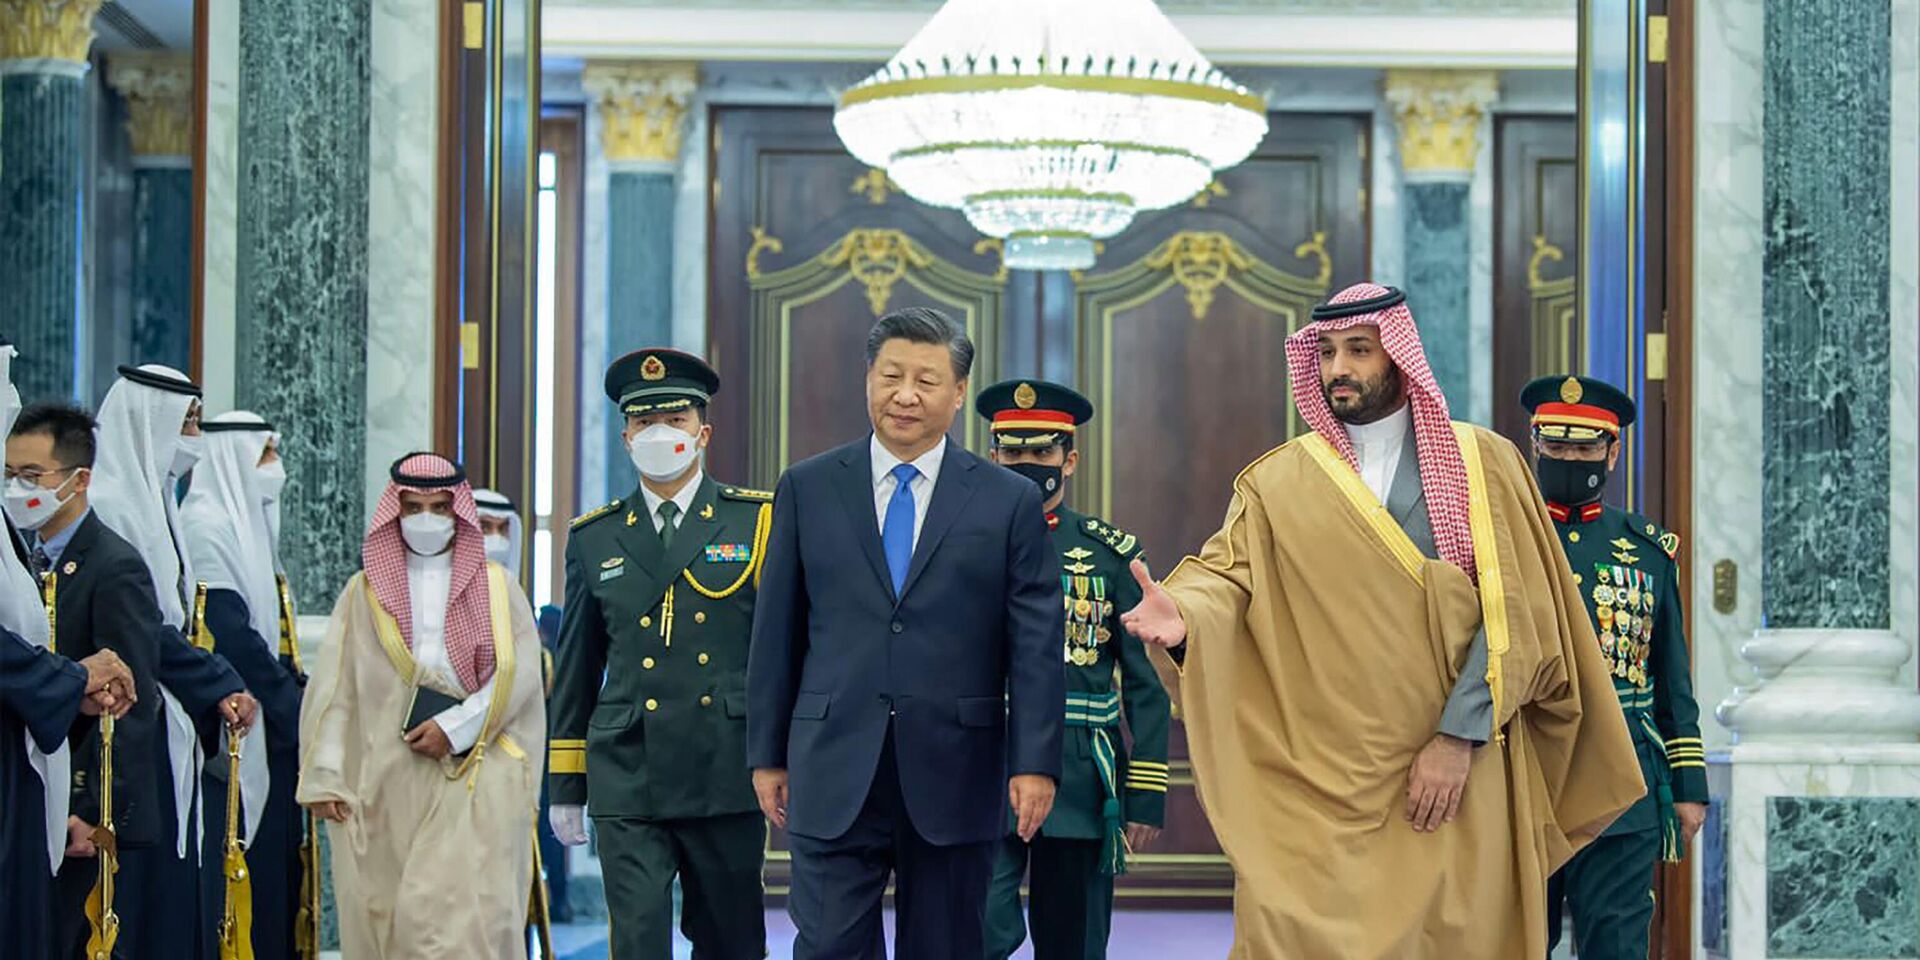 Председатель КНР Си Цзиньпин и наследный принц Саудовской Аравии Мухаммед бен Салман во время встречи в Эр-Рияде. 8 декабря 2022 года - ИноСМИ, 1920, 13.12.2022